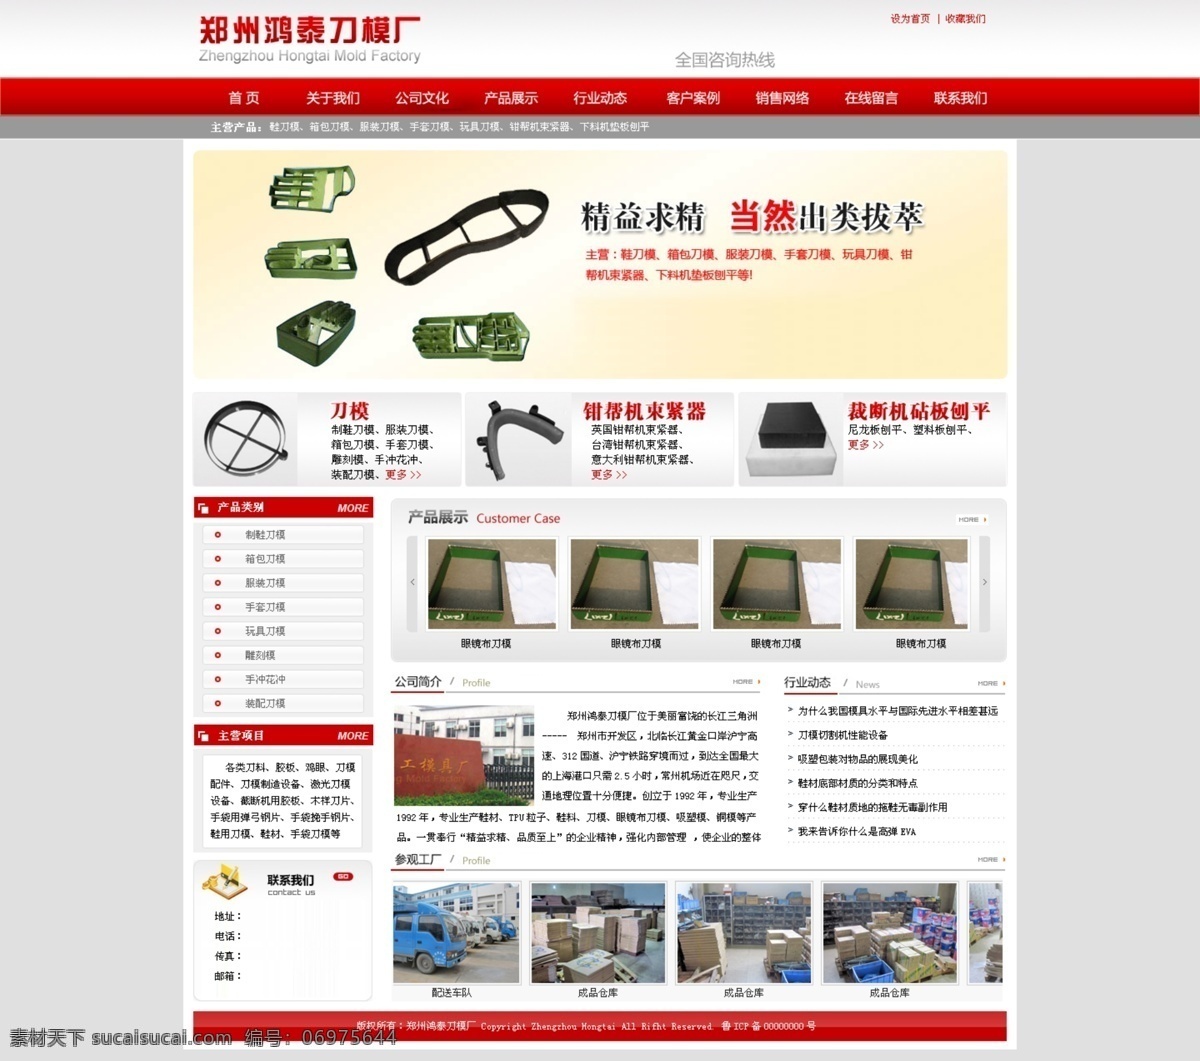 郑州 鸿泰 刀模 网站 网页 企业网站 界面 首页 展示 分层 红色 刀具 模具 web 界面设计 中文模板 白色